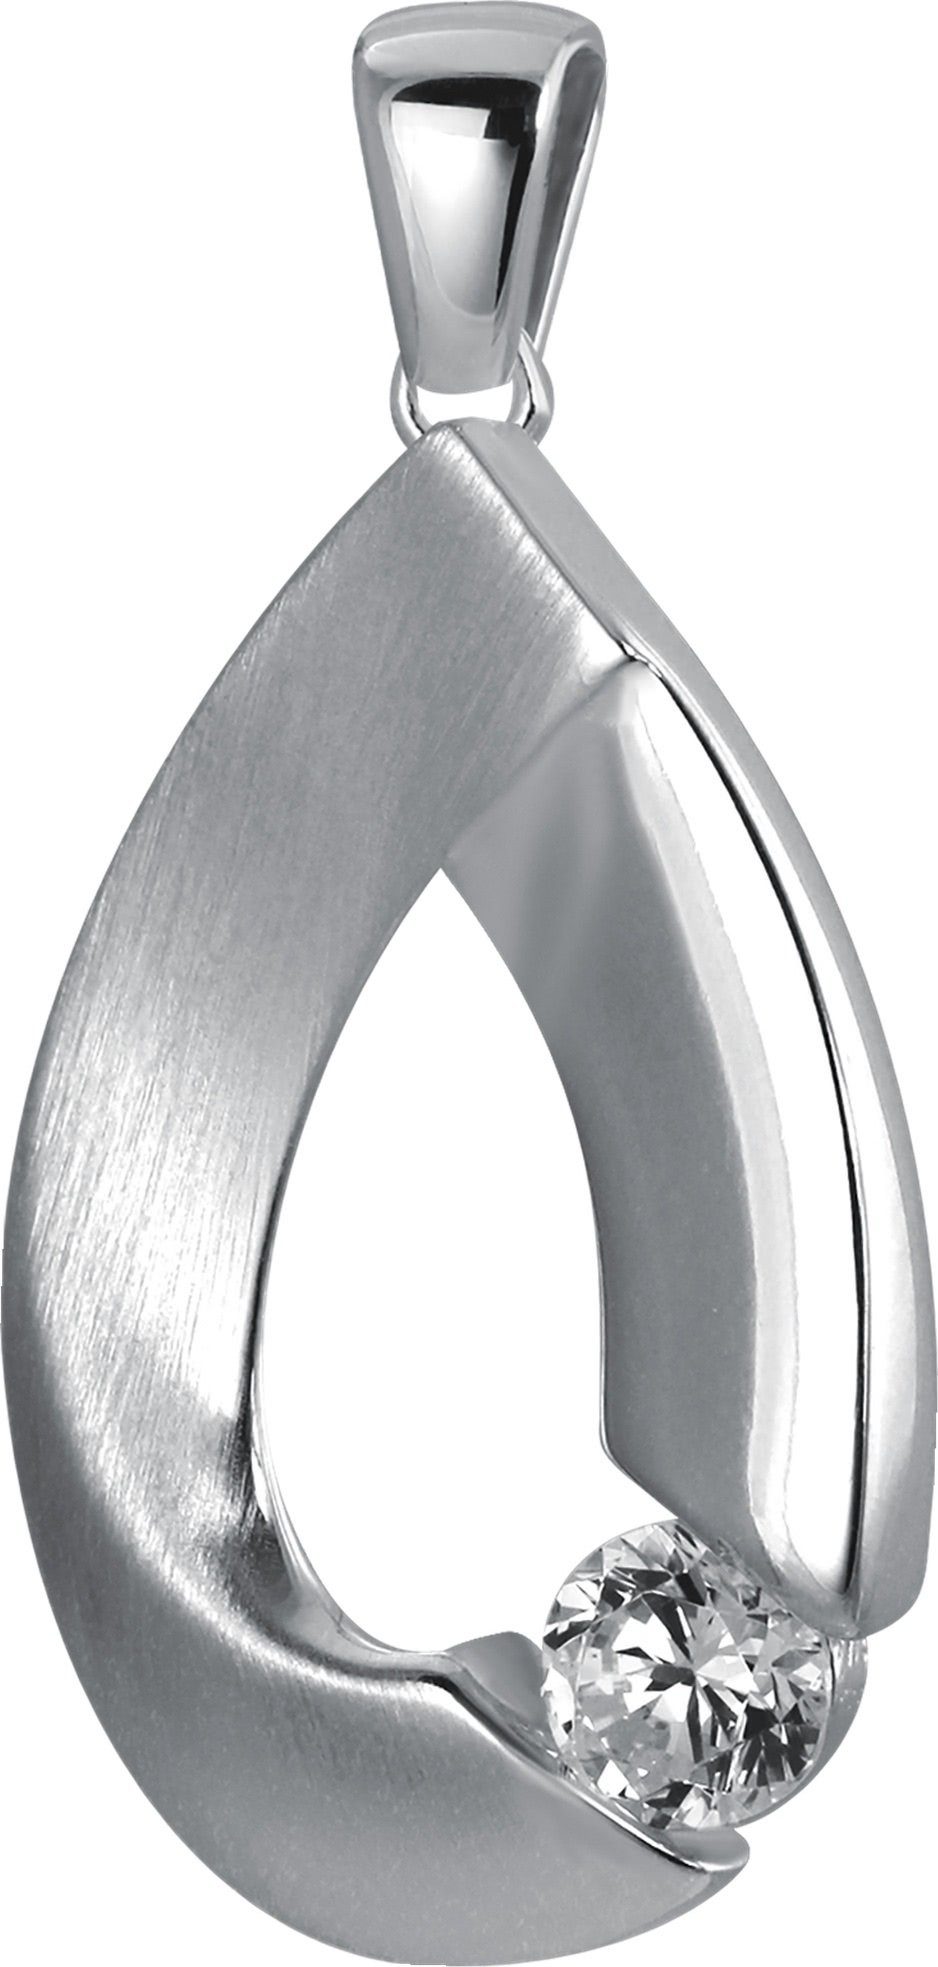 Balia Kettenanhänger Balia Kettenanhänger für Damen 925 Silber, Kettenanhänger ca. 3,2cm, 925 Sterling Silber (Big) | Kettenanhänger